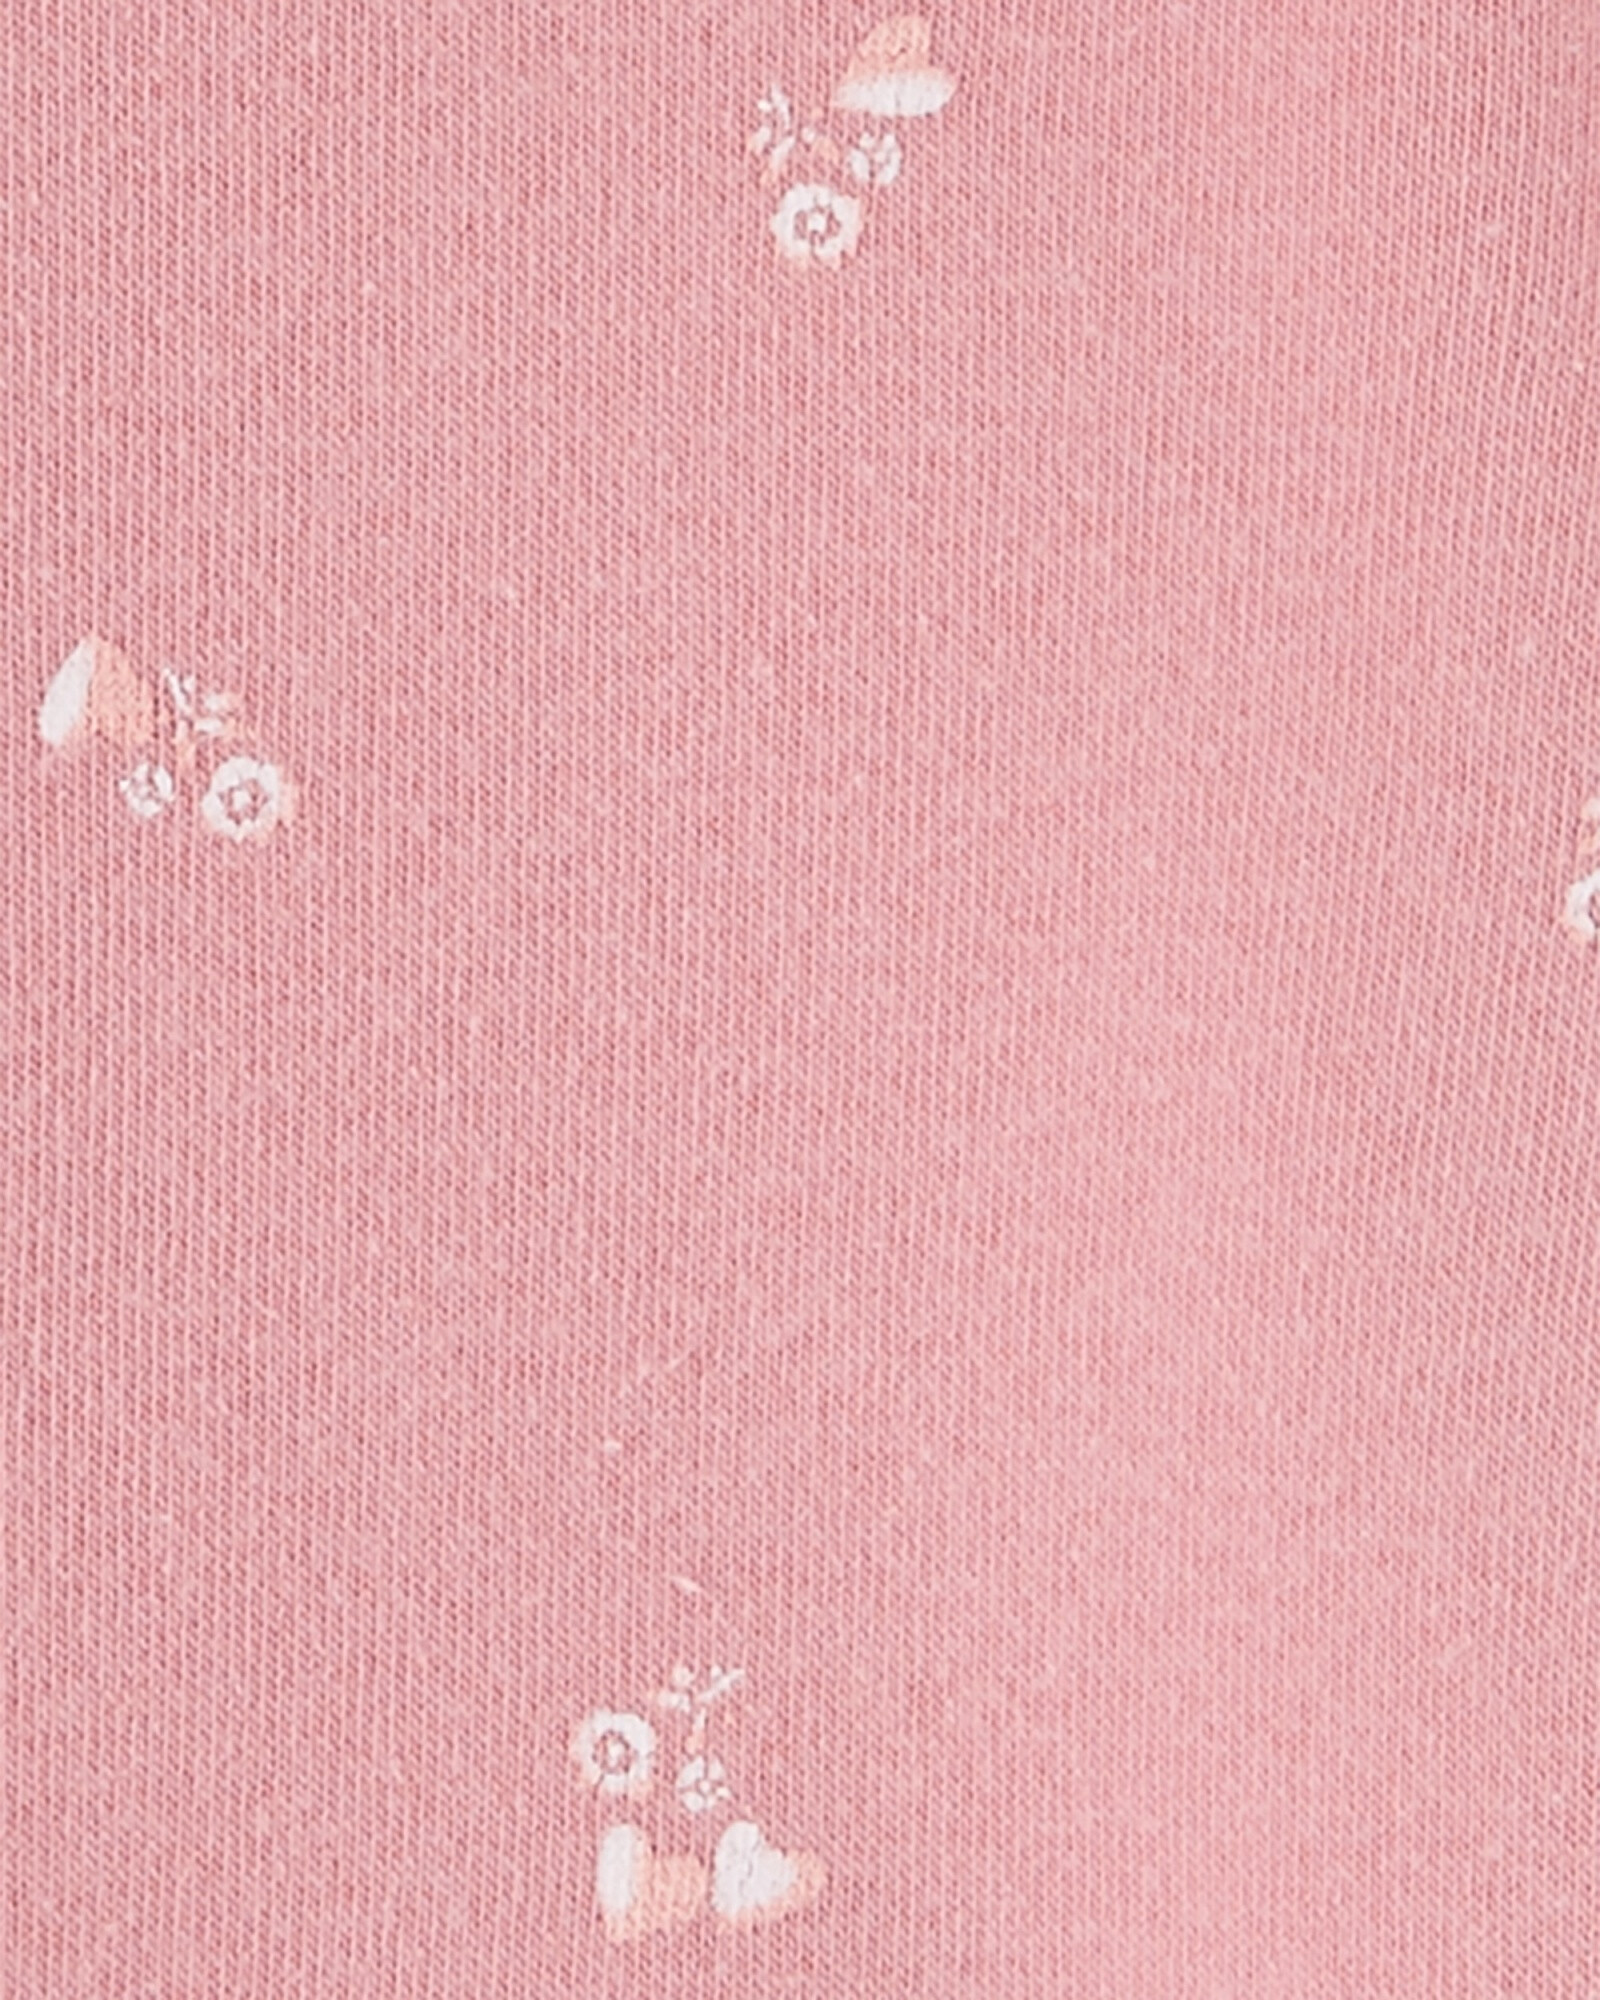 Campera de algodón con felpa, rosada, estampada. Talles 12-24M Sin color